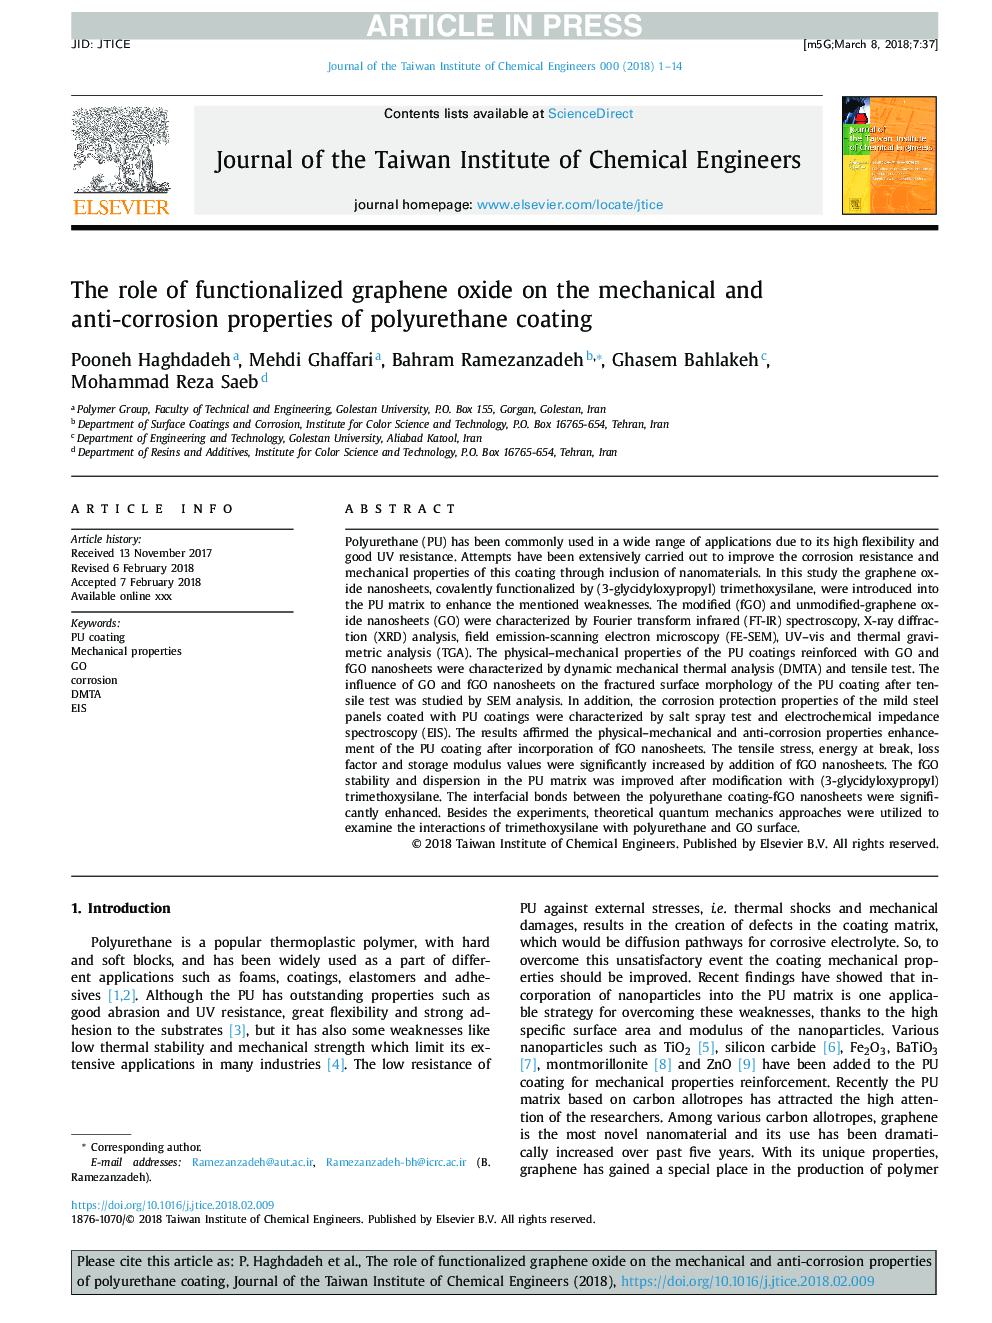 نقش اکسید گرافن کارکردی بر خواص مکانیکی و ضد خوردگی پوشش پلی اورتان 